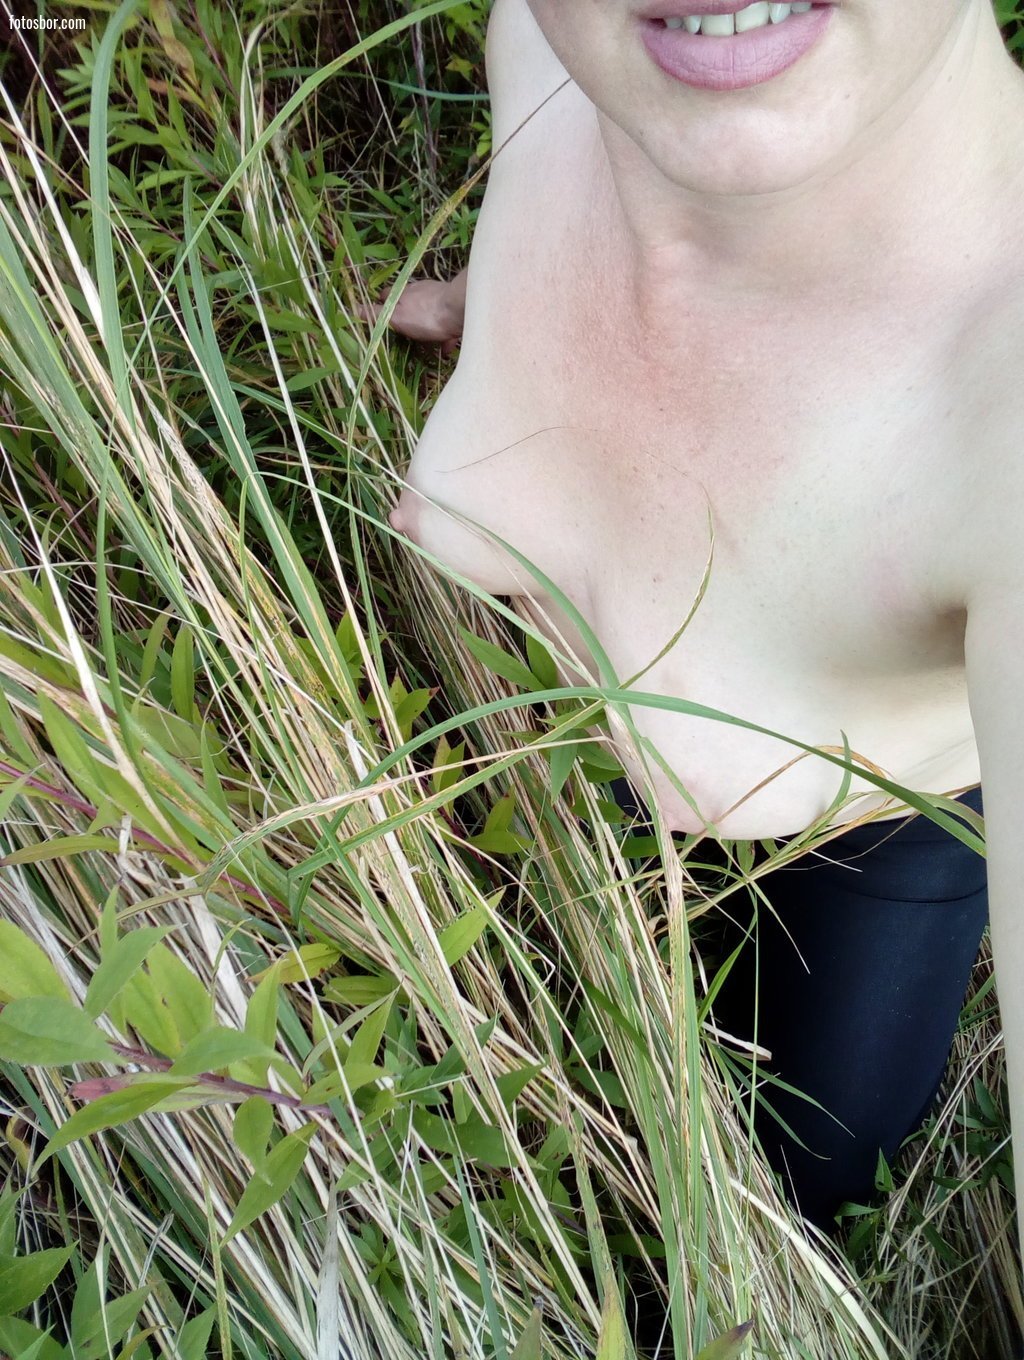 Порно фото Жена разделась на природе и показывает маленькую грудь смотреть бесплатно